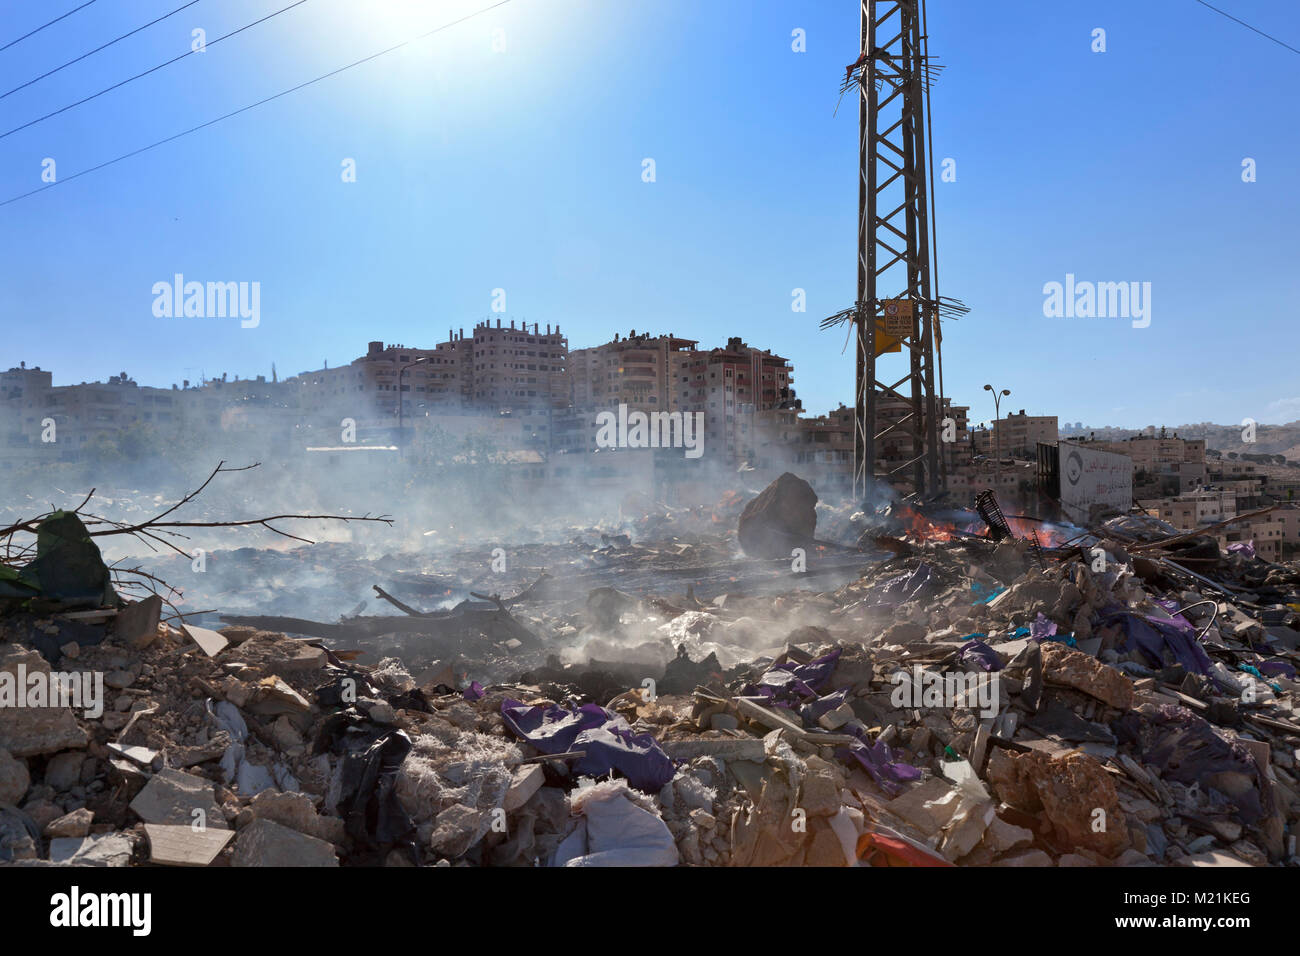 Betlemme, Palestina, 10 Giugno 2014: Garbage dump nel deserto della Giudea, vicino a Betlemme. Il conflitto con Israele e la sua situazione di stallo politico lasciare un po' di parte Foto Stock